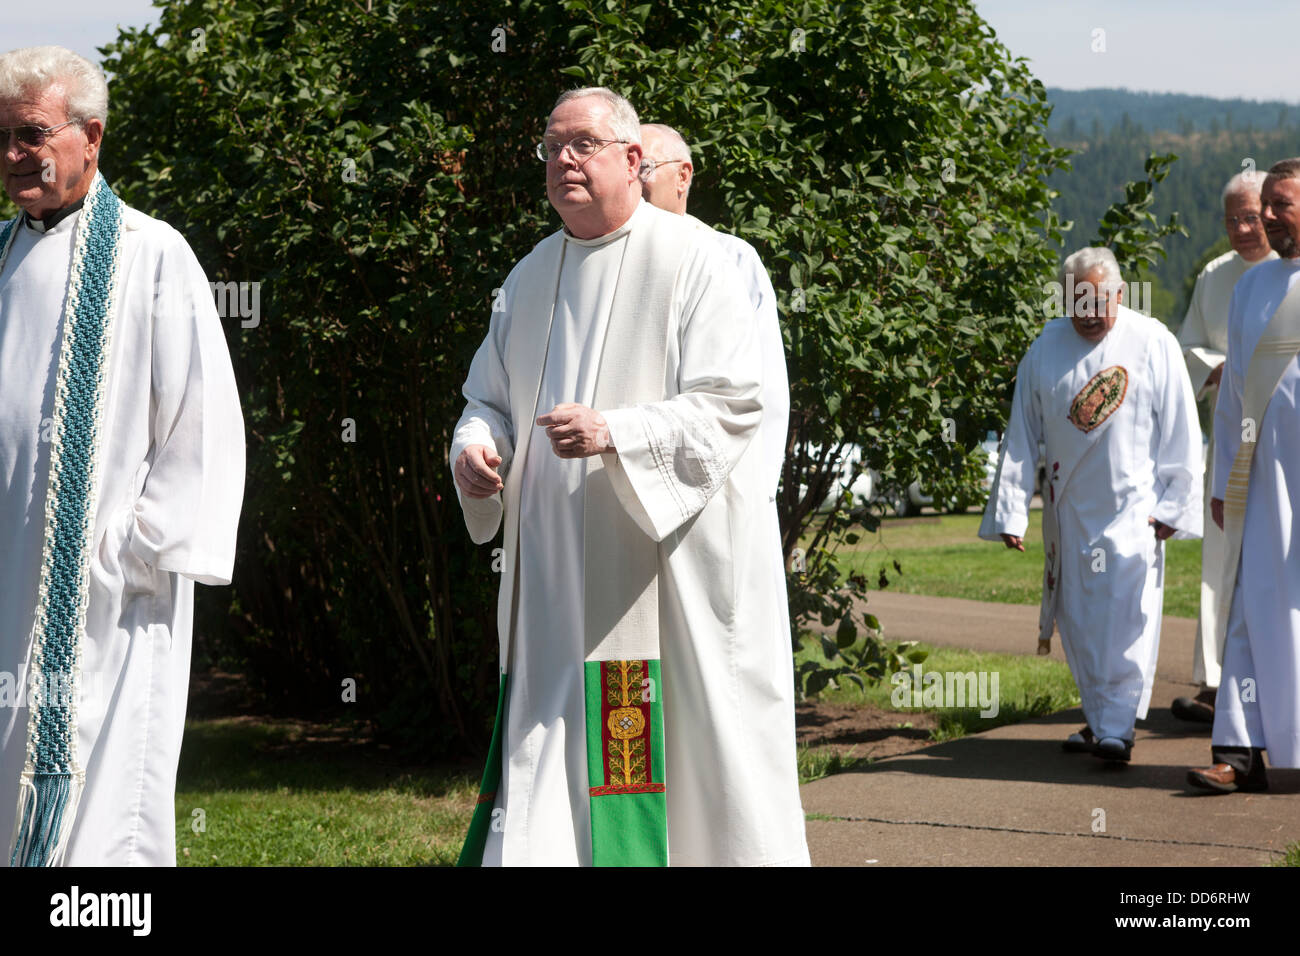 Jesuiten-Priester Fuß bis zum Beginn der Mariä Himmelfahrt Cataldo, Idaho am 15. August 2013. Stockfoto